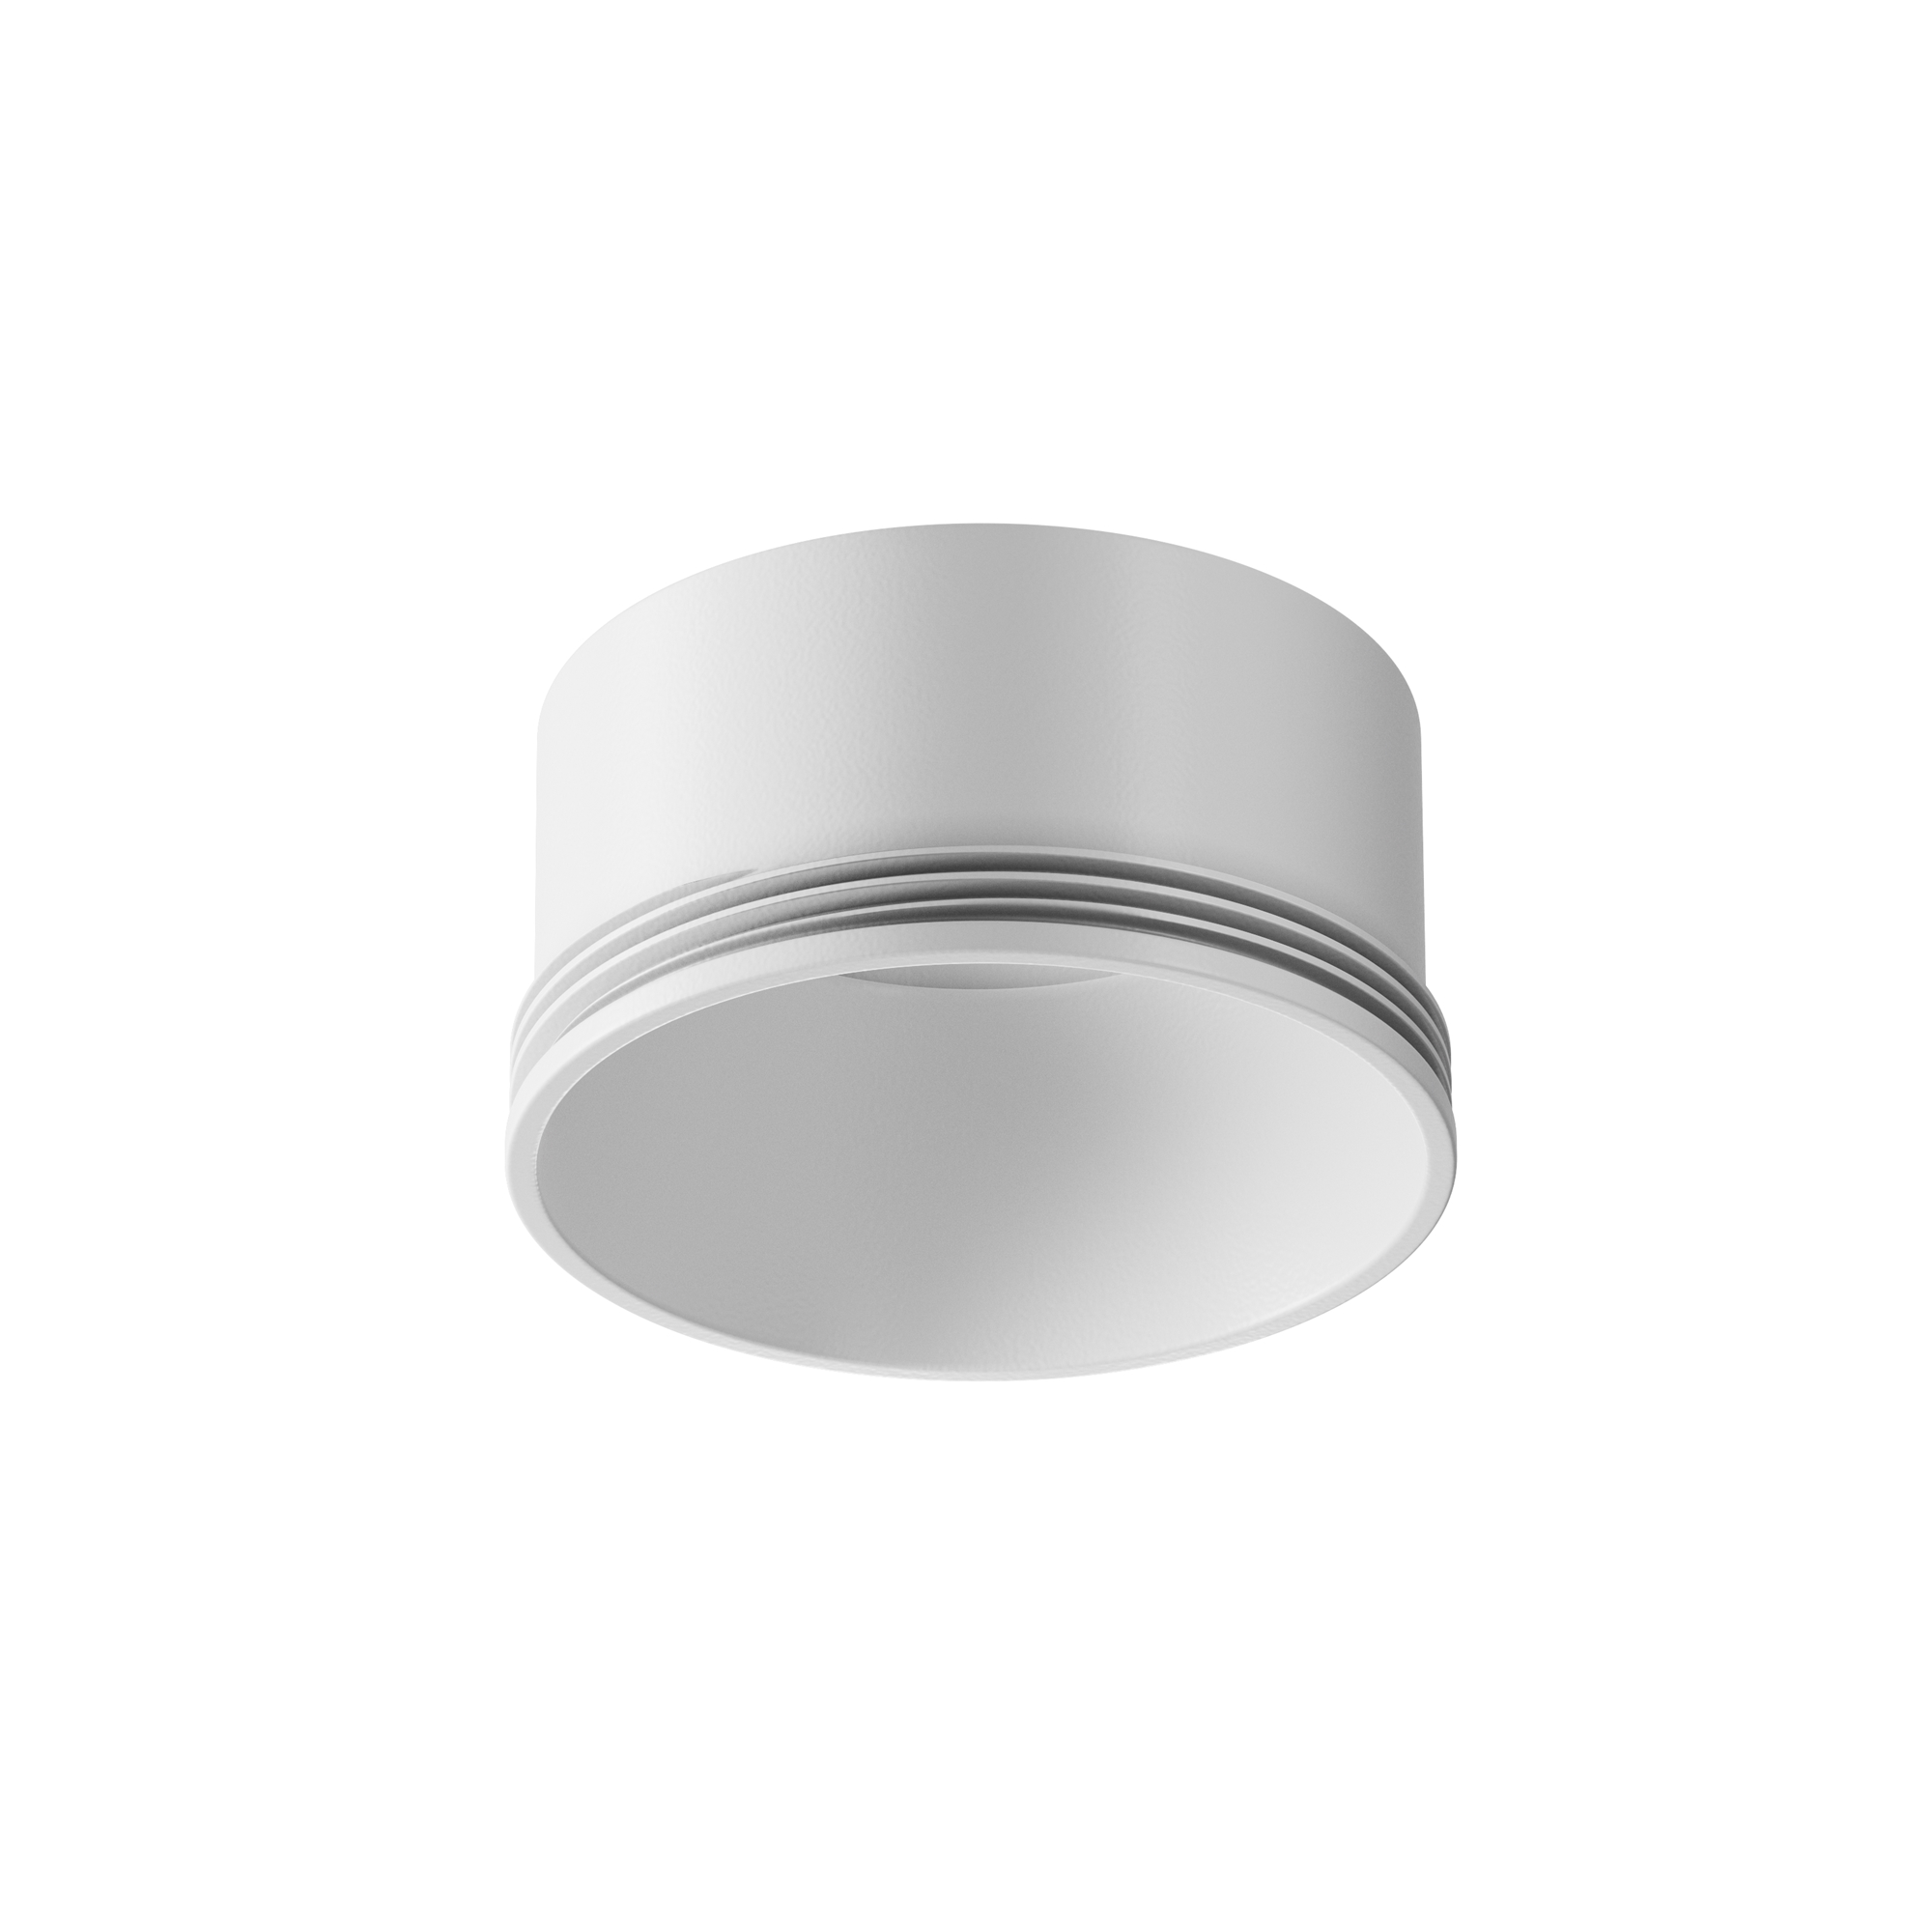 Кольцо декоративное для светильника Maytoni Focus LED  Ring S-5-W